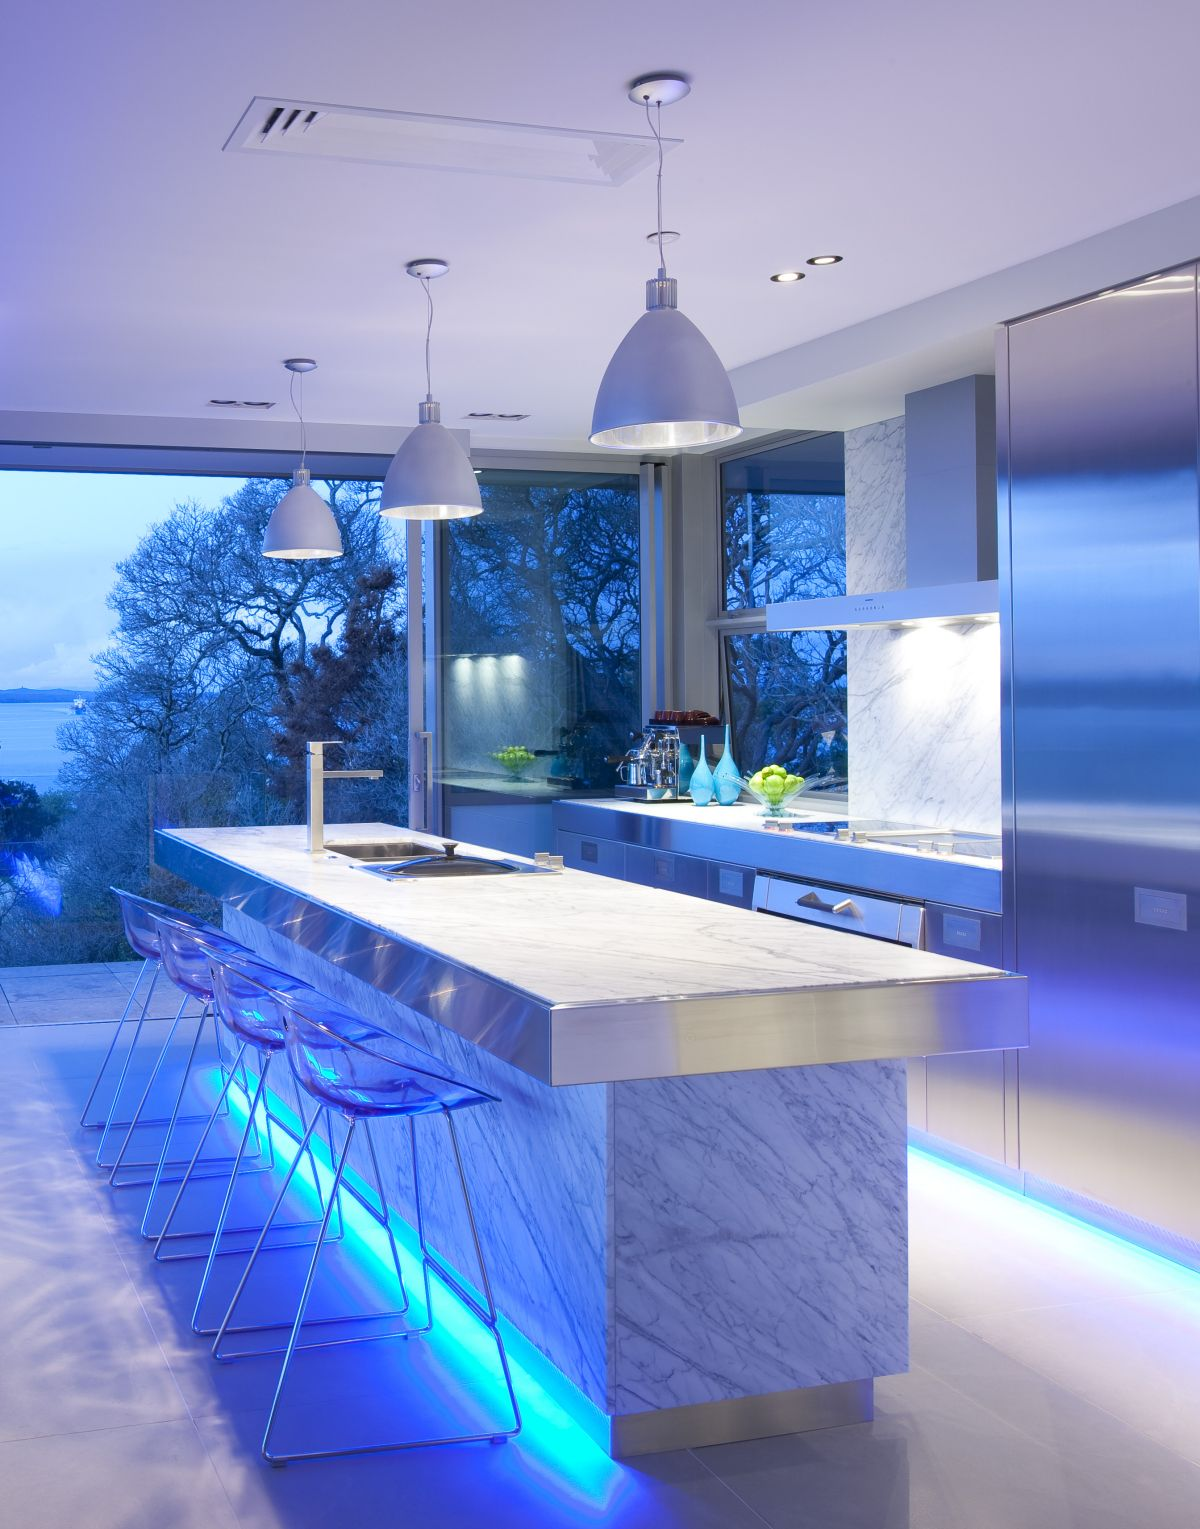 Năm 2024, đèn LED trang trí bếp với nhiều màu sắc tươi sáng đã trở thành xu hướng trang trí gian bếp đang được nhiều gia đình lựa chọn. Với ánh sáng siêu sáng và tiết kiệm điện năng, chiếc đèn LED trang trí bếp sẽ làm cho gian bếp trở nên sang trọng và mới mẻ hơn bao giờ hết. Nhấn vào ảnh để tìm kiếm những mô hình đèn LED trang trí bếp tốt nhất cho căn bếp của bạn.